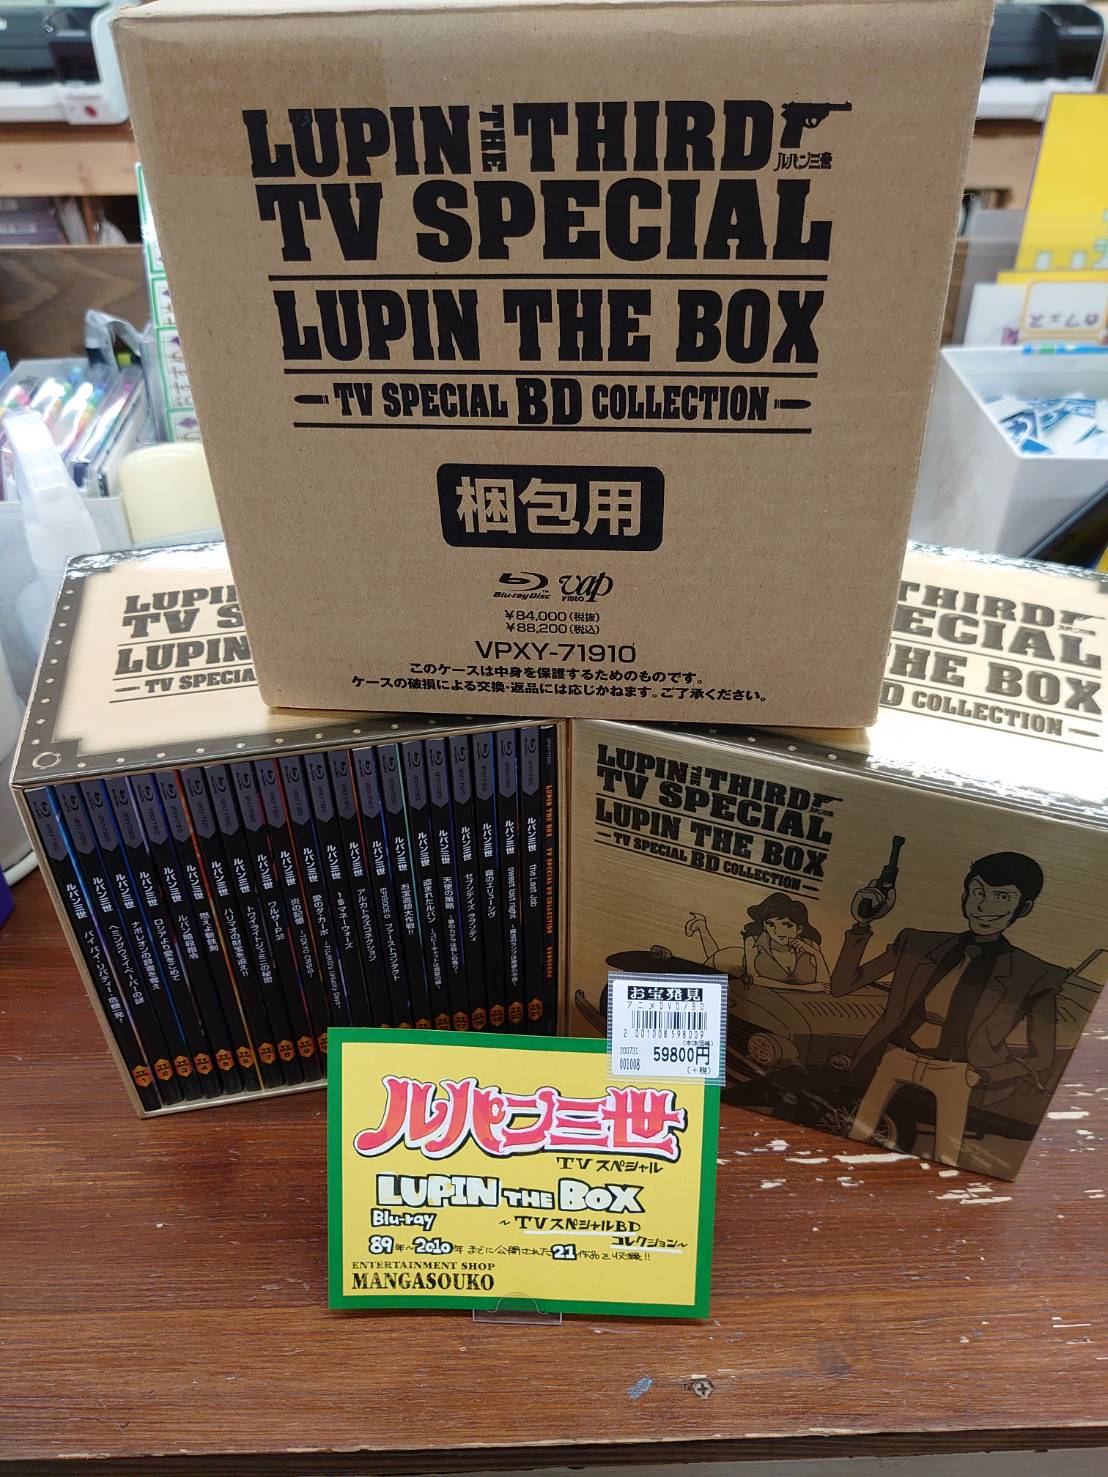 ルパン三世 テレビスペシャル LUPIN THE BOX~TV スペシャルBD 